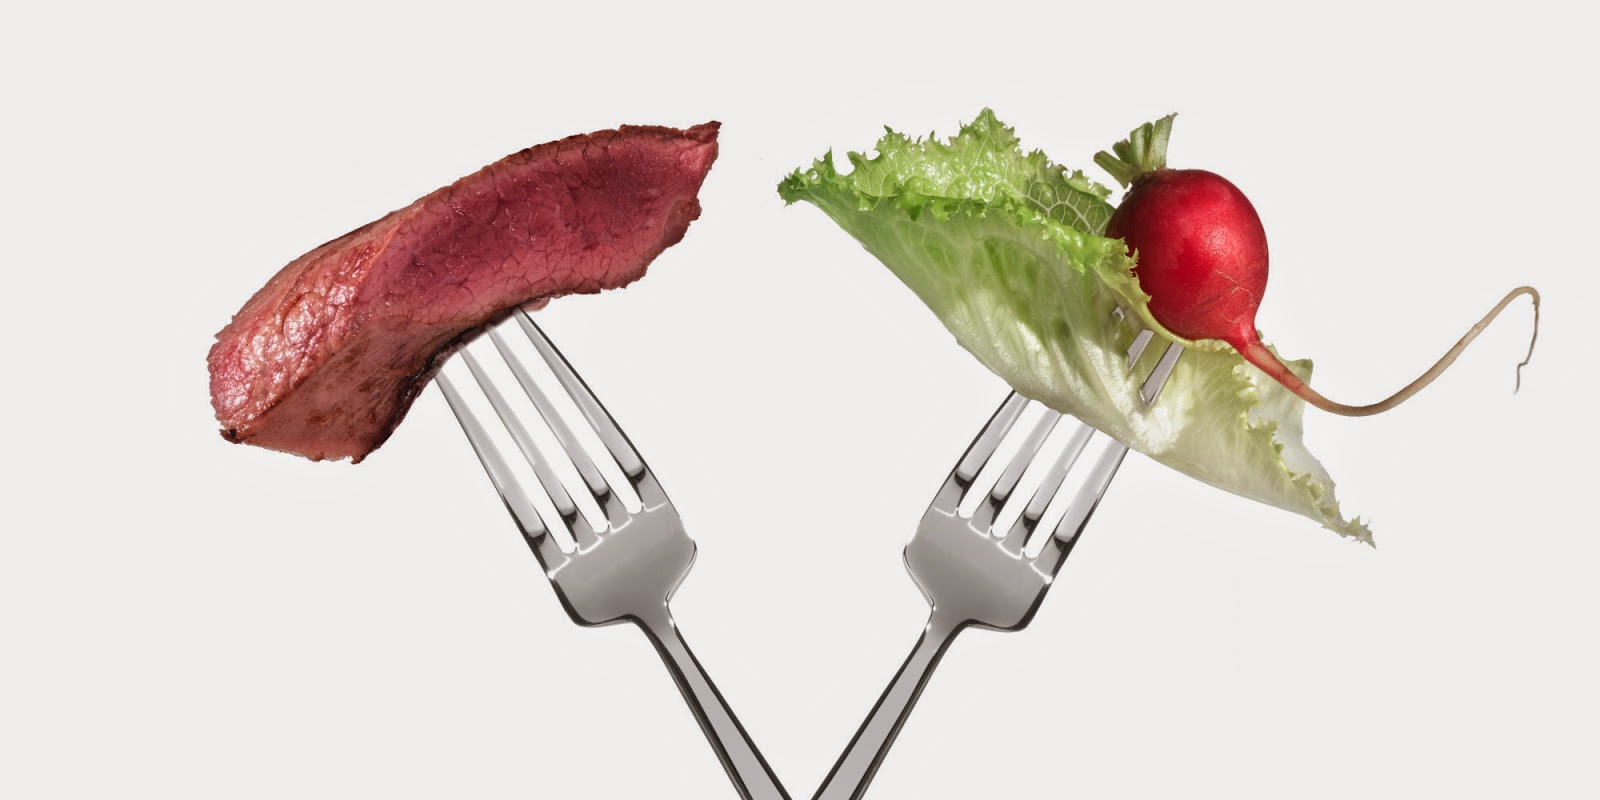 meat vs vegan.jpg.